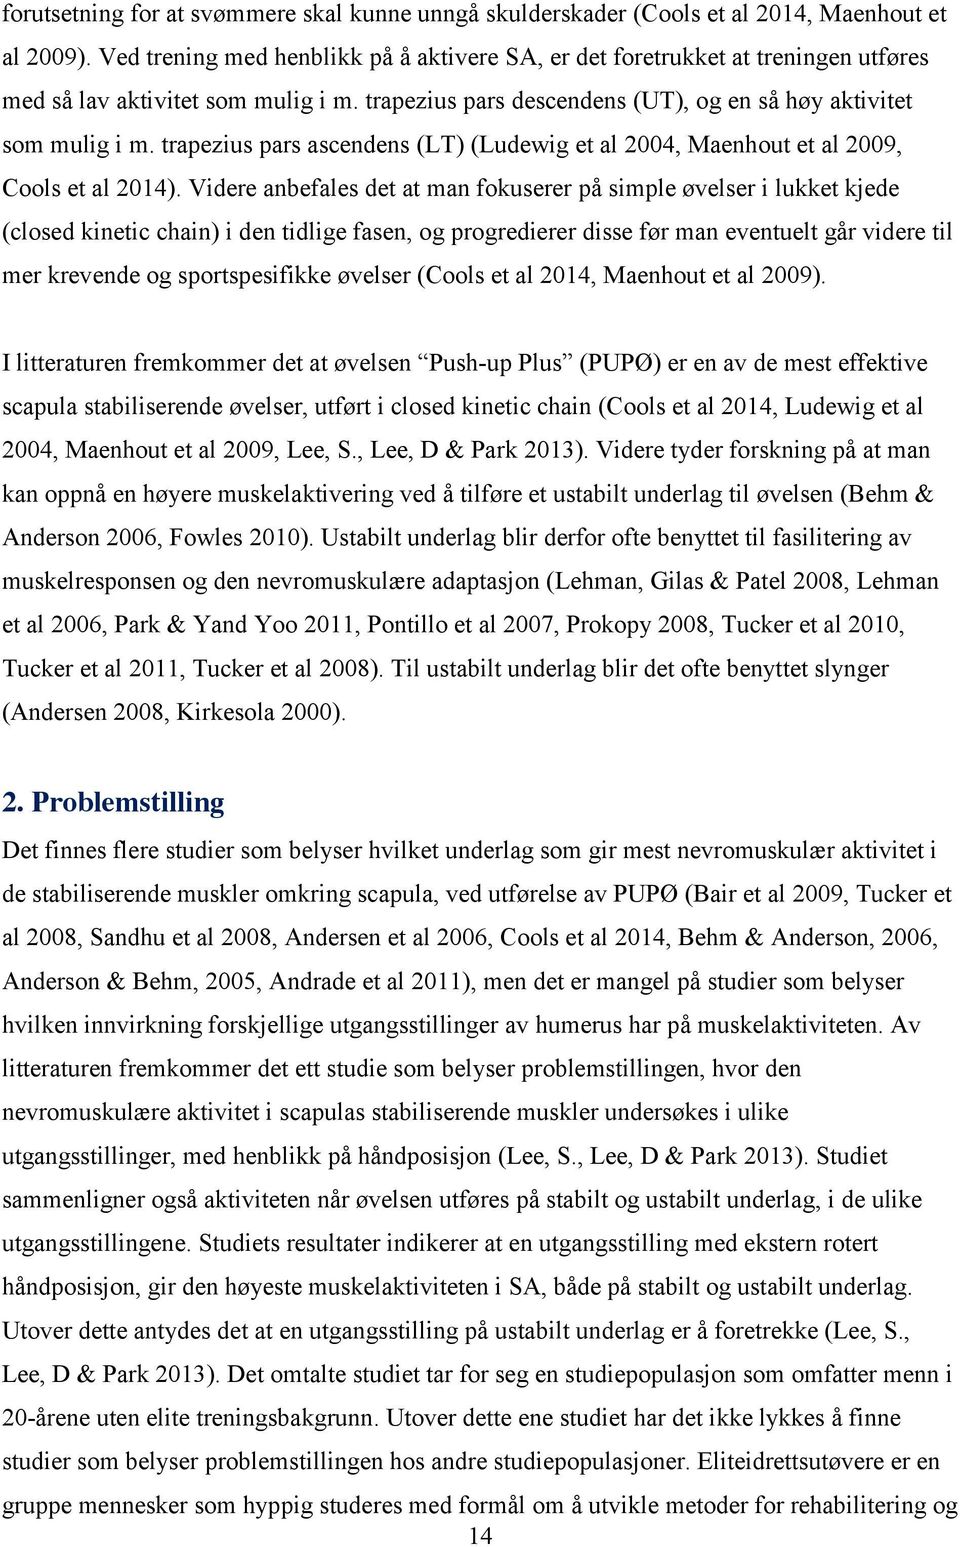 trapezius pars ascendens (LT) (Ludewig et al 2004, Maenhout et al 2009, Cools et al 2014).